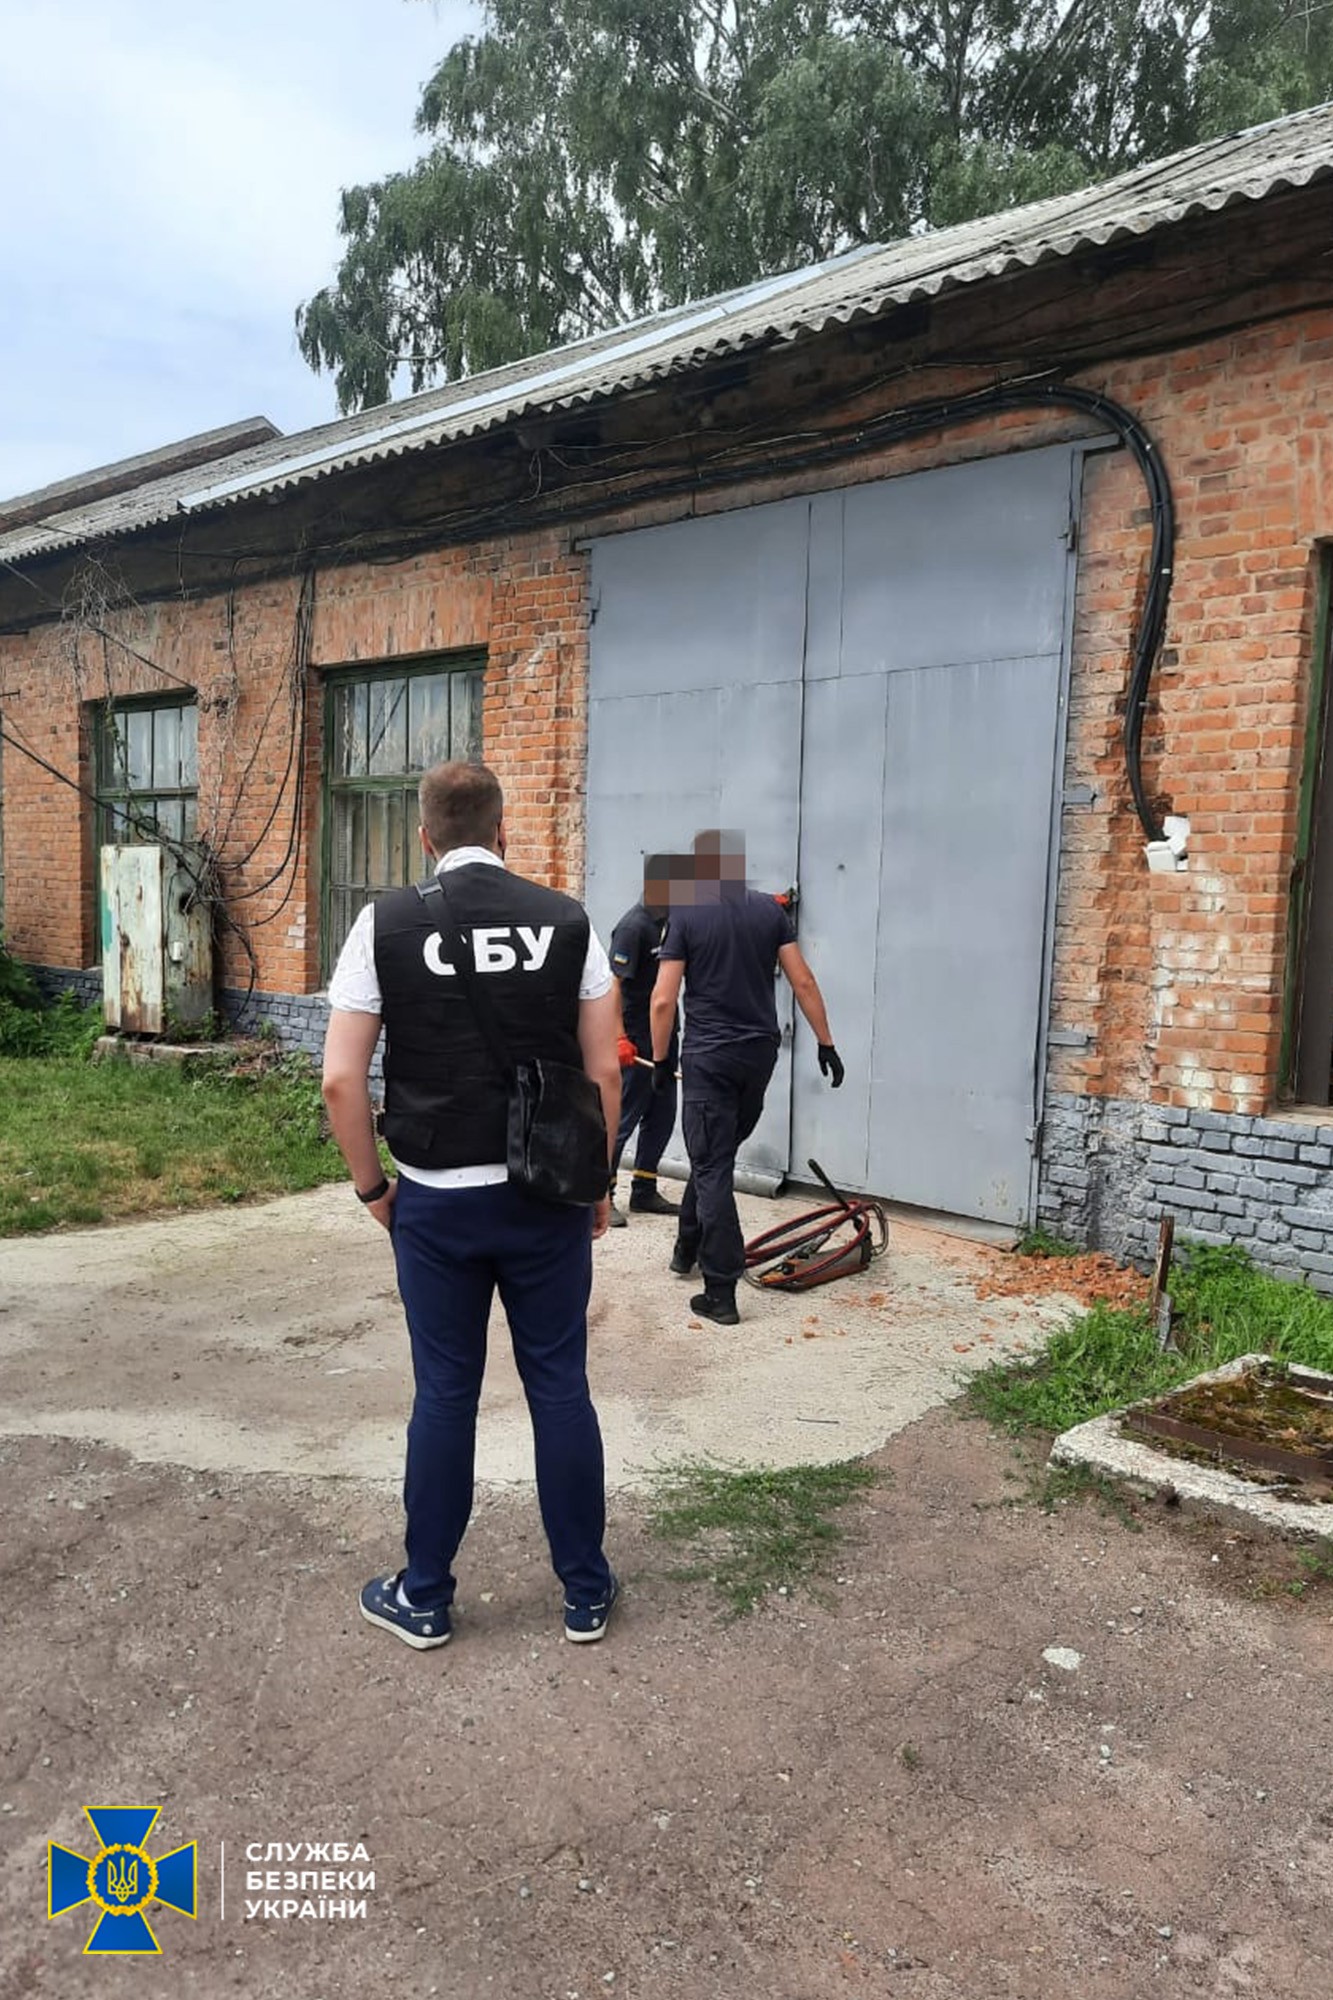 СБУ обезвредила криптоферму, которая могла оставить часть Черниговской области без света и воды (фото) - фото 2